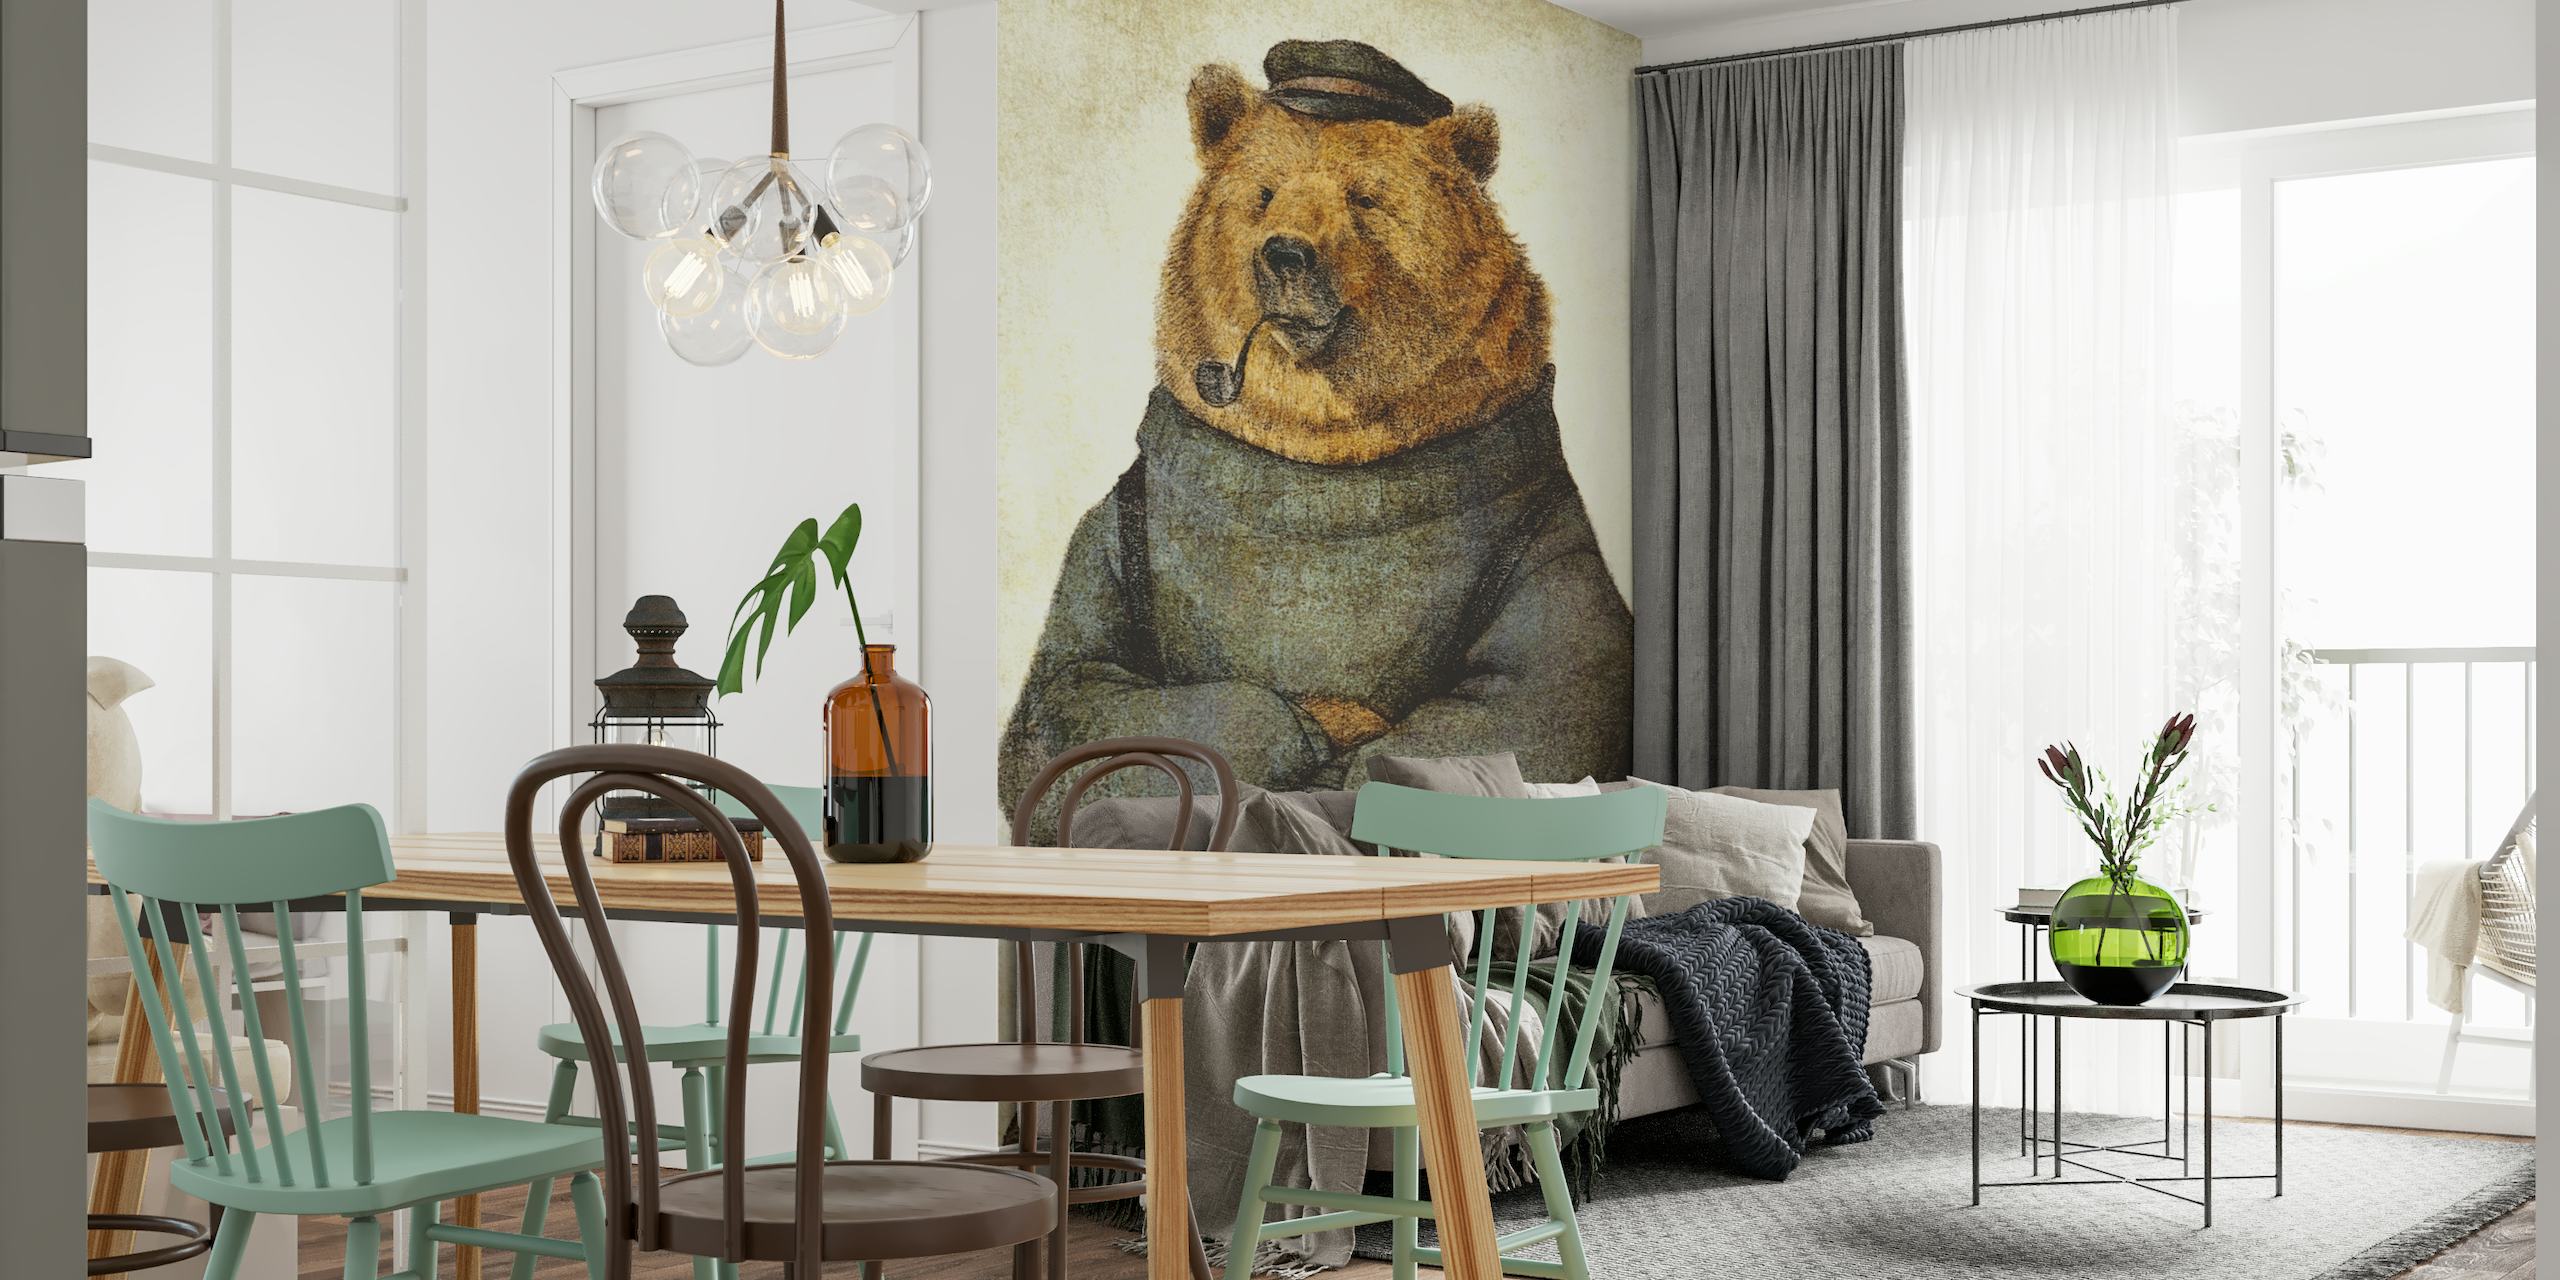 Ilustración de un oso vestido como un marinero pensativo con una pipa